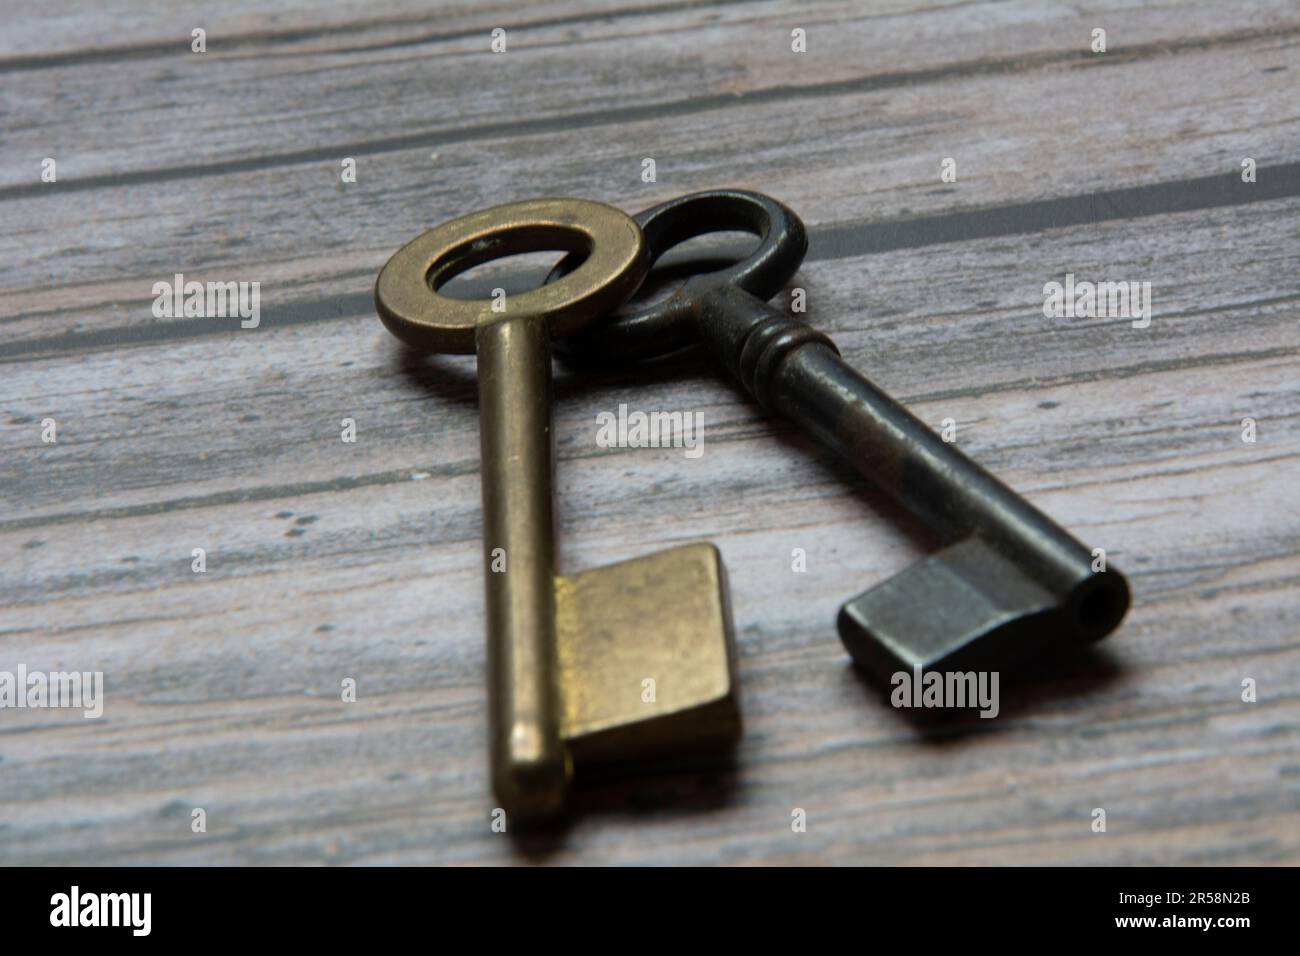 Alte schlüssel auf einem hintergrund von holzbrettern